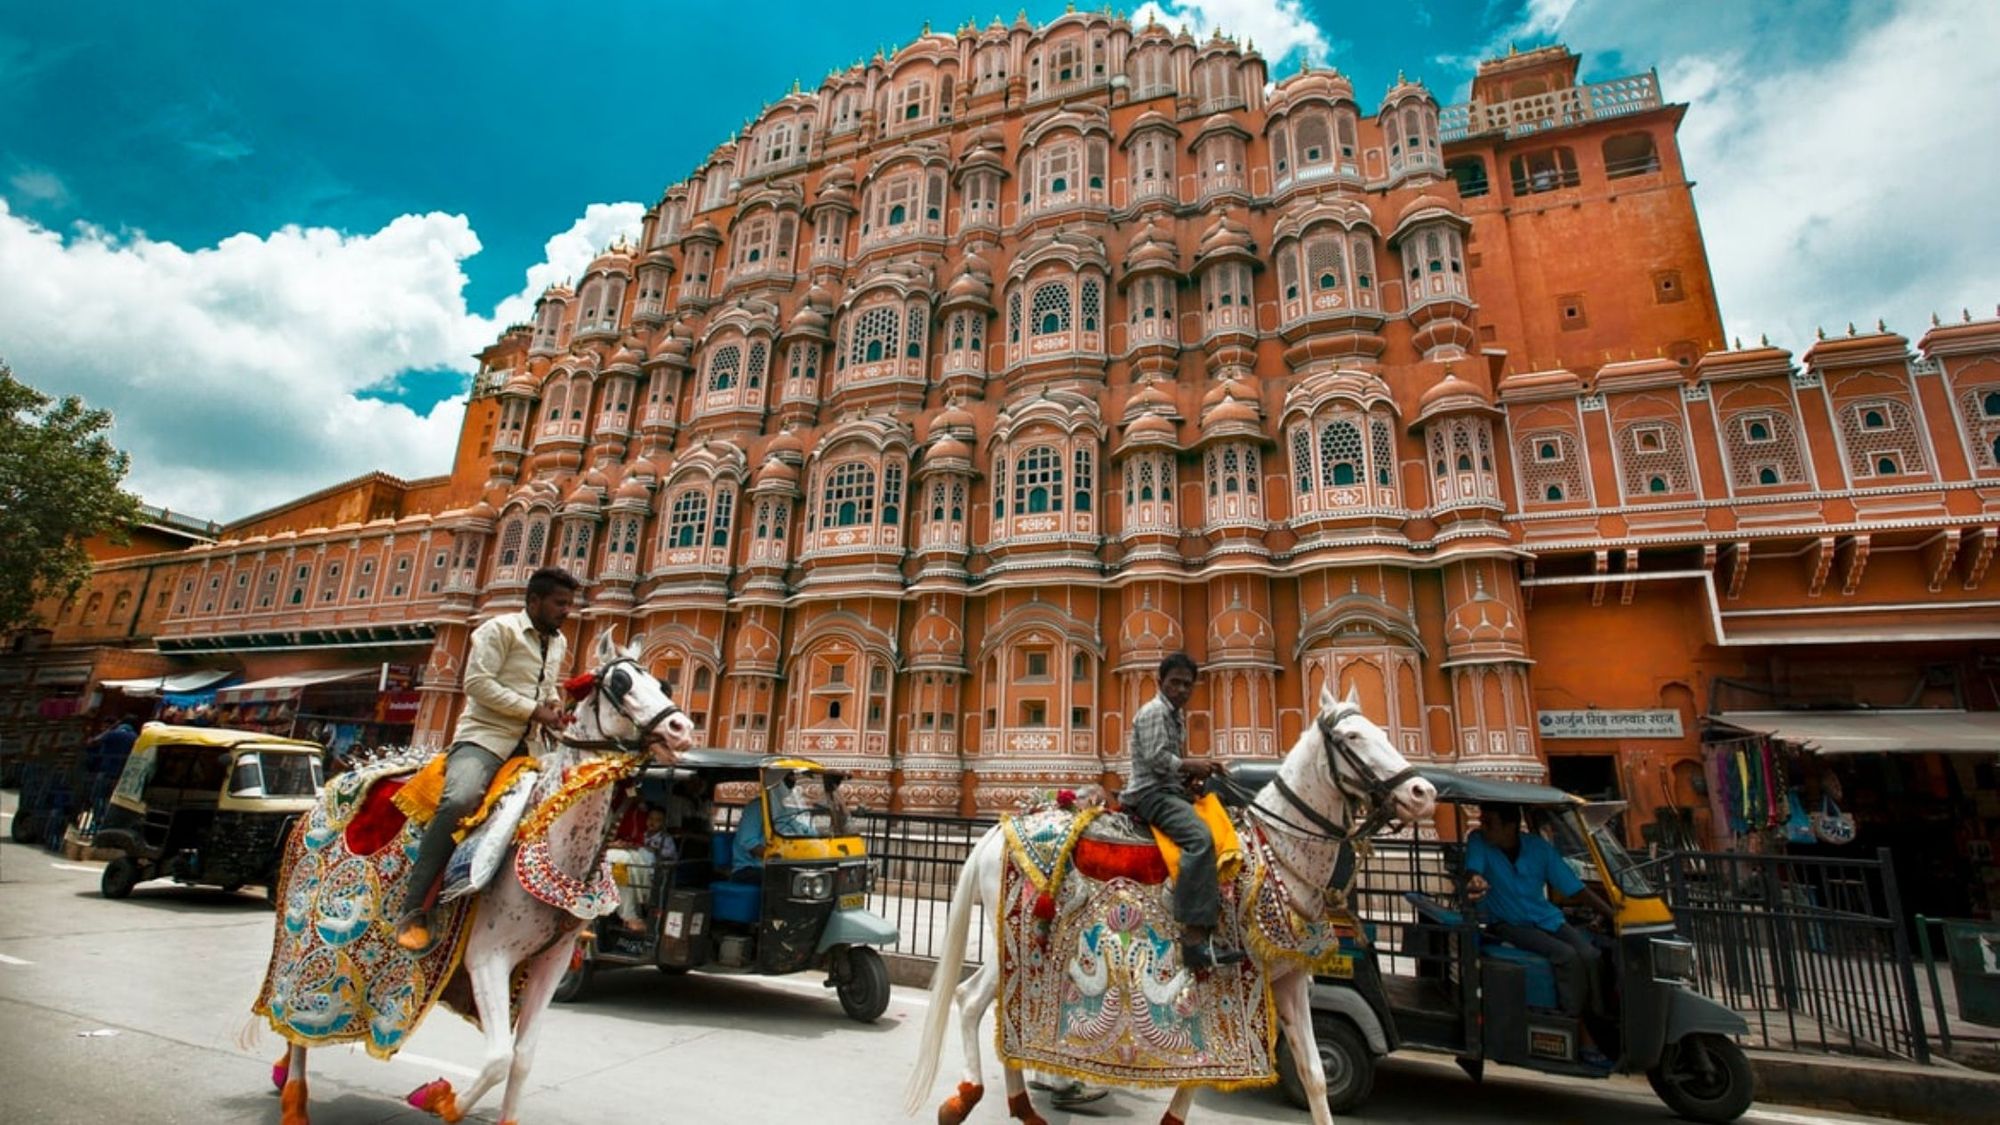 Jaipur: Architecture, Art and Culture, Festivals in Jaipur